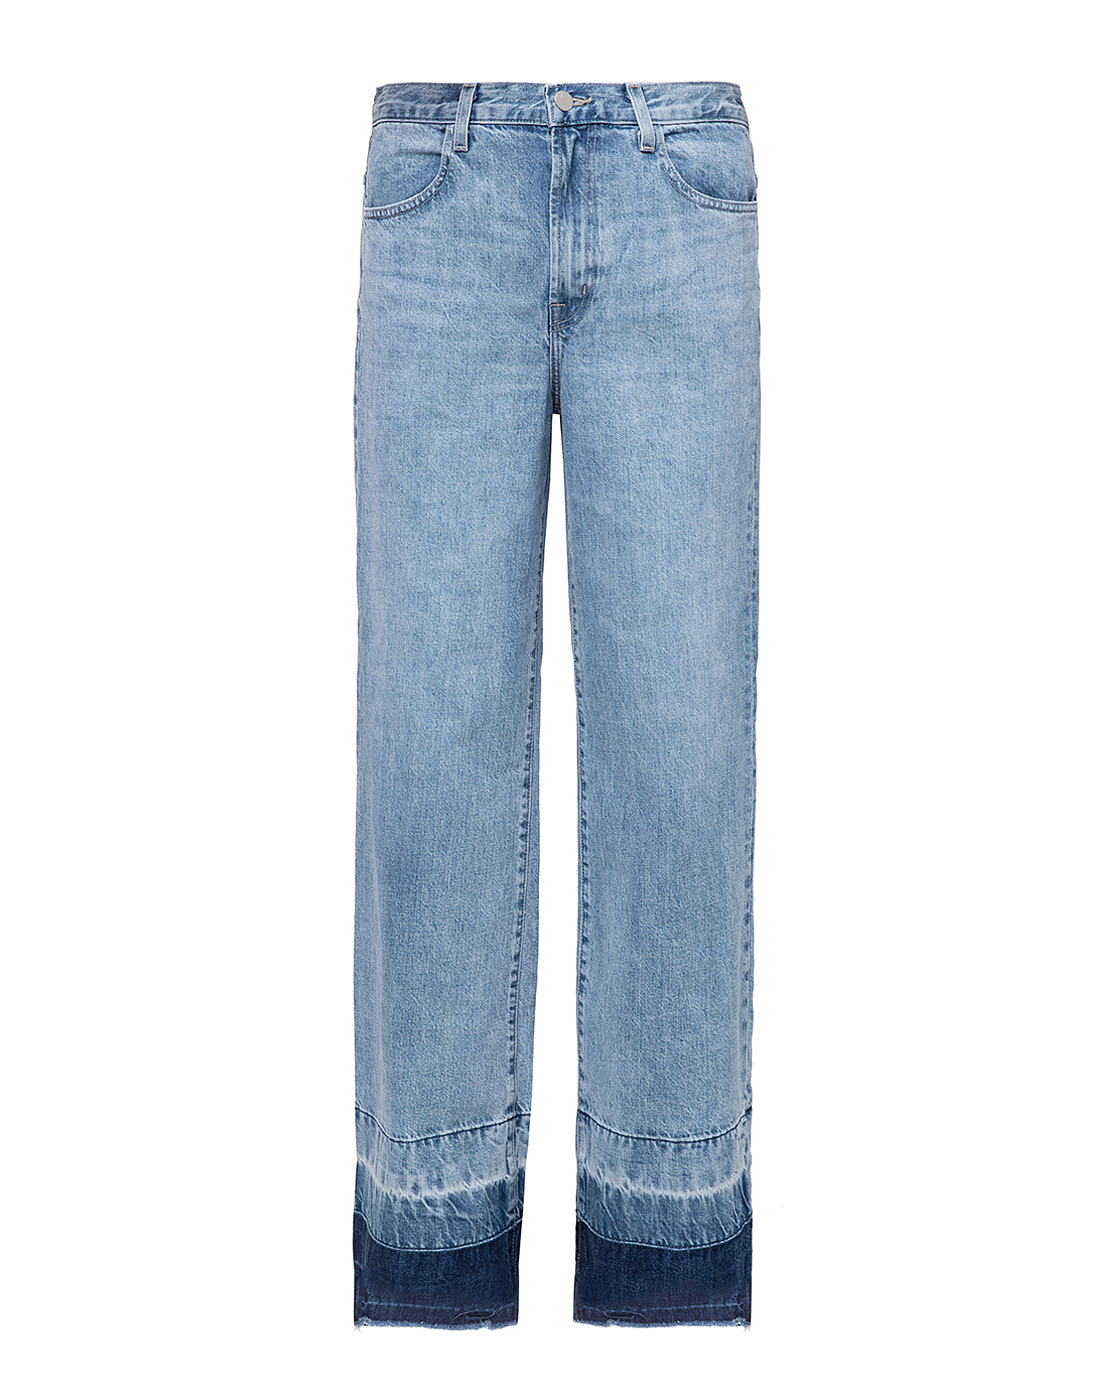 Женские голубые джинсы J BRAND SJB002785-1